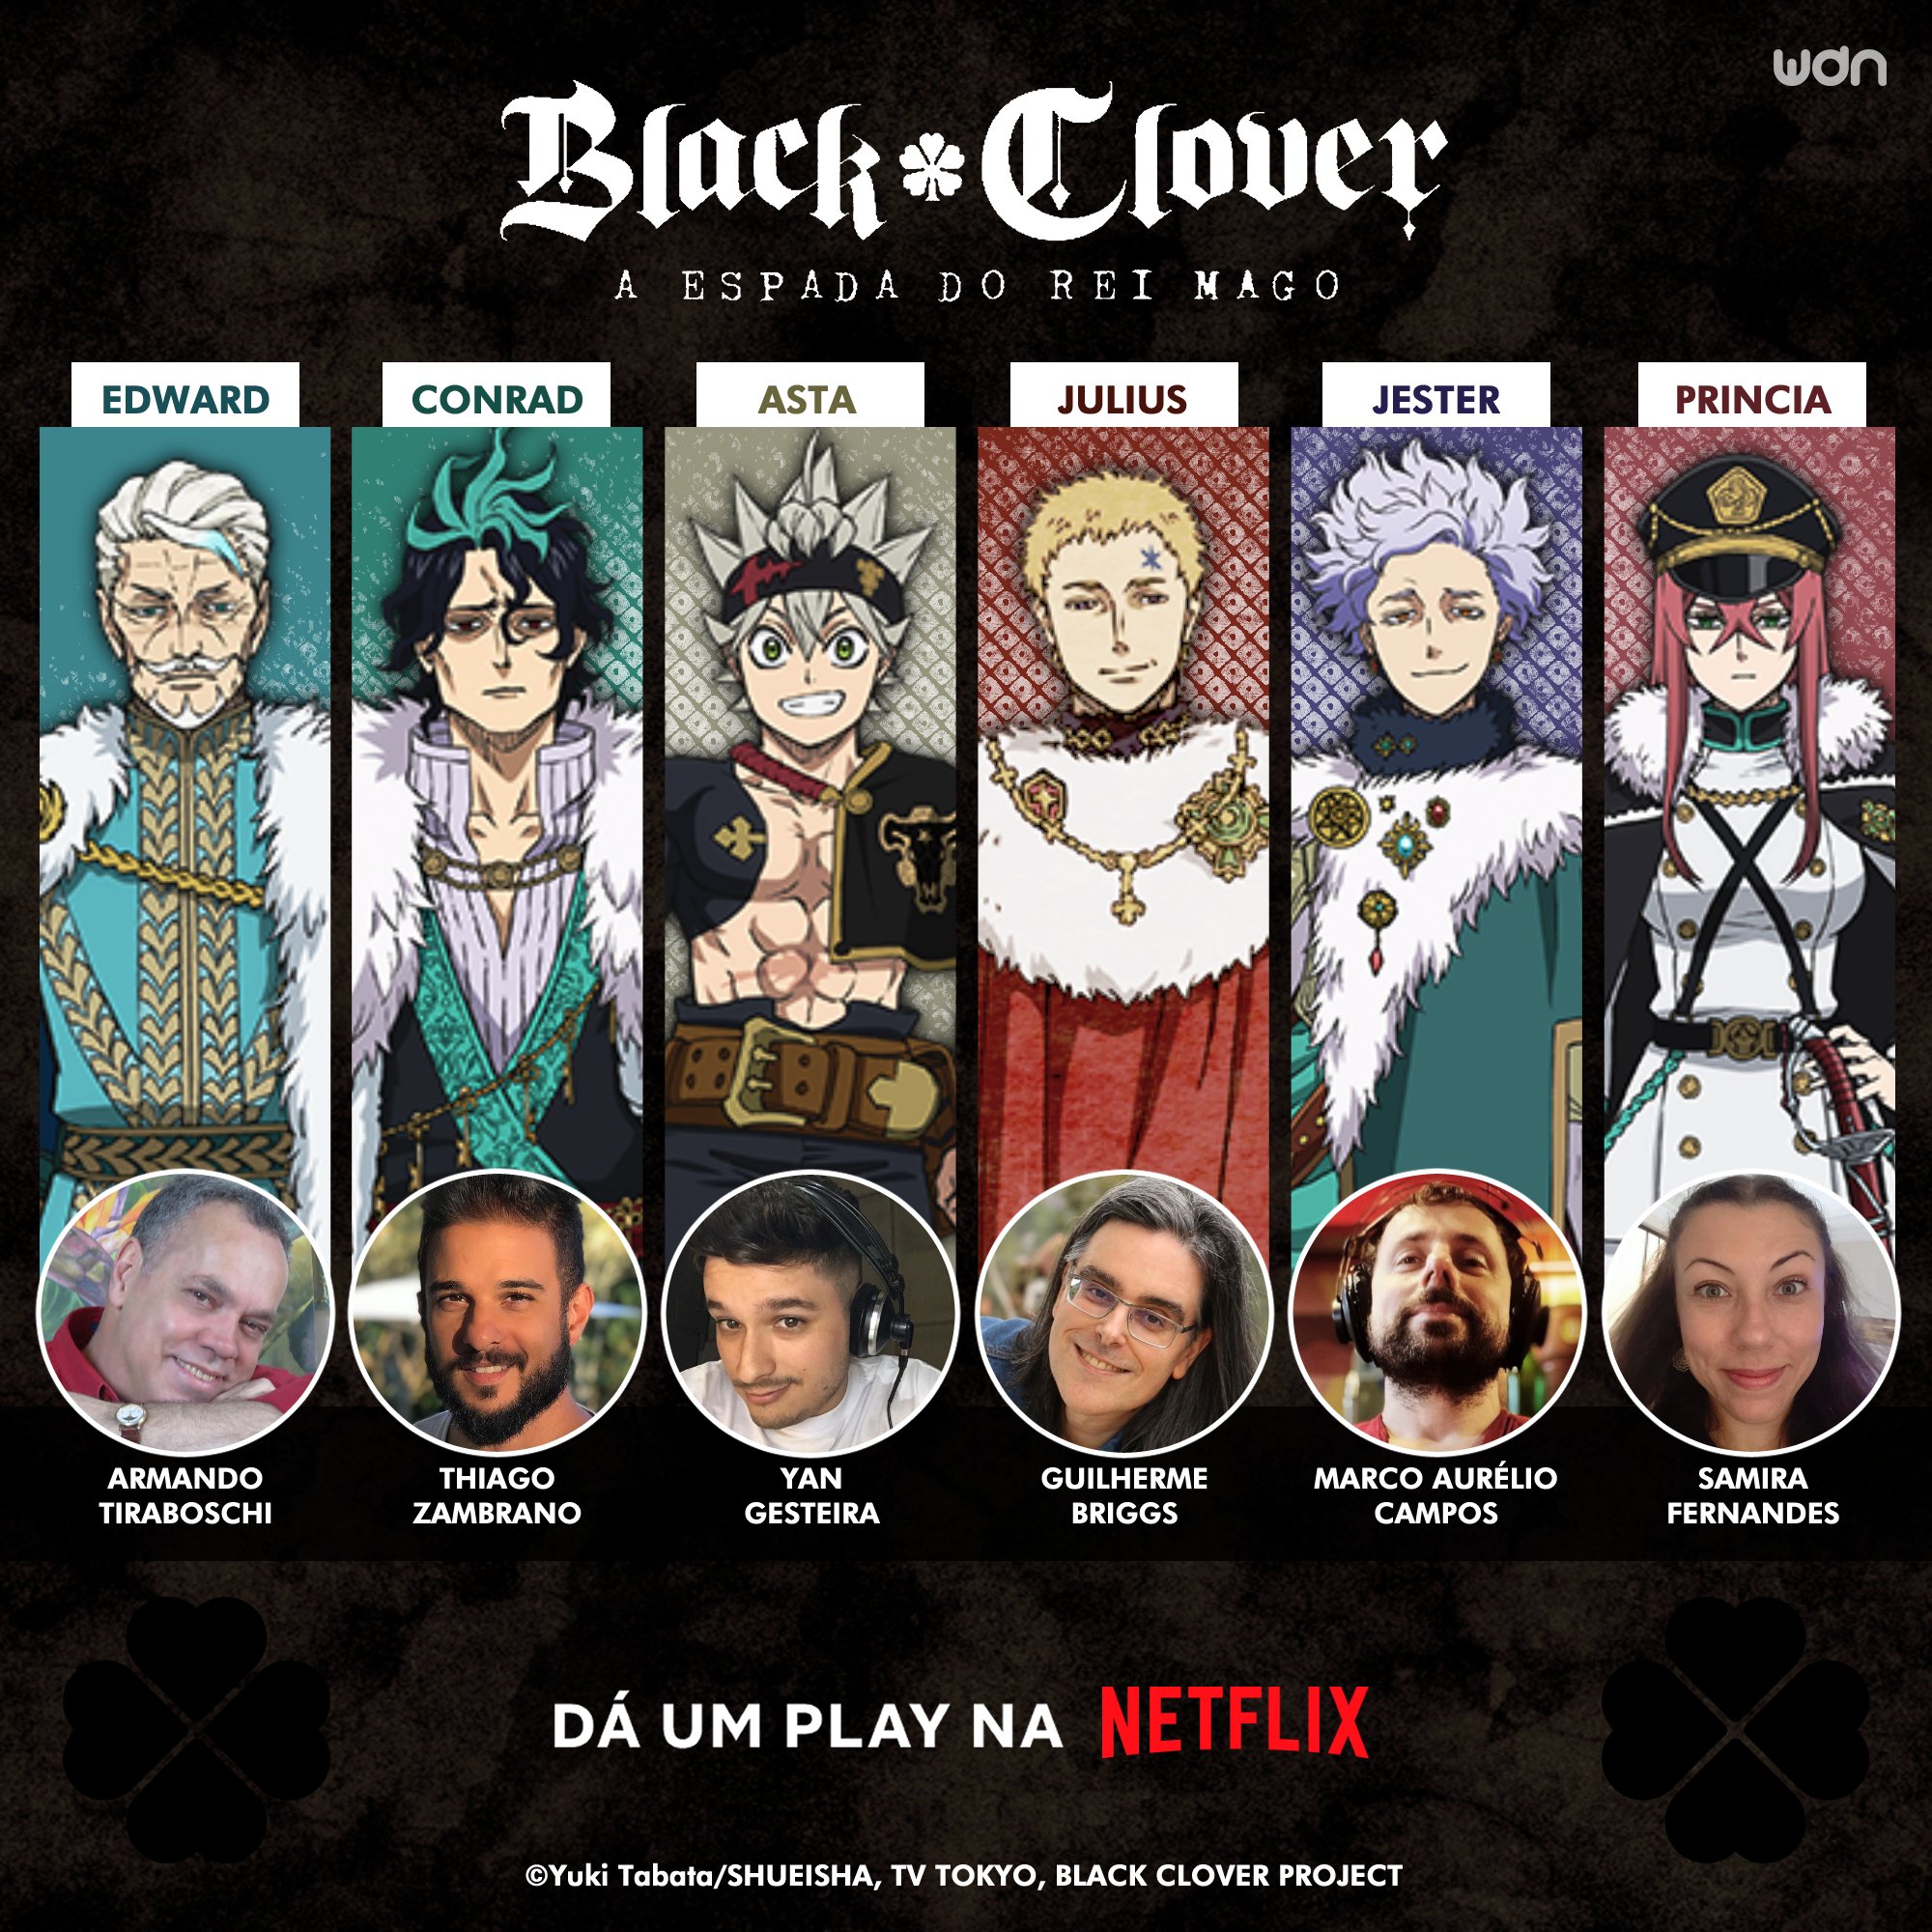 Black Clover: qual a relação do filme A Espada do Rei Mago com o